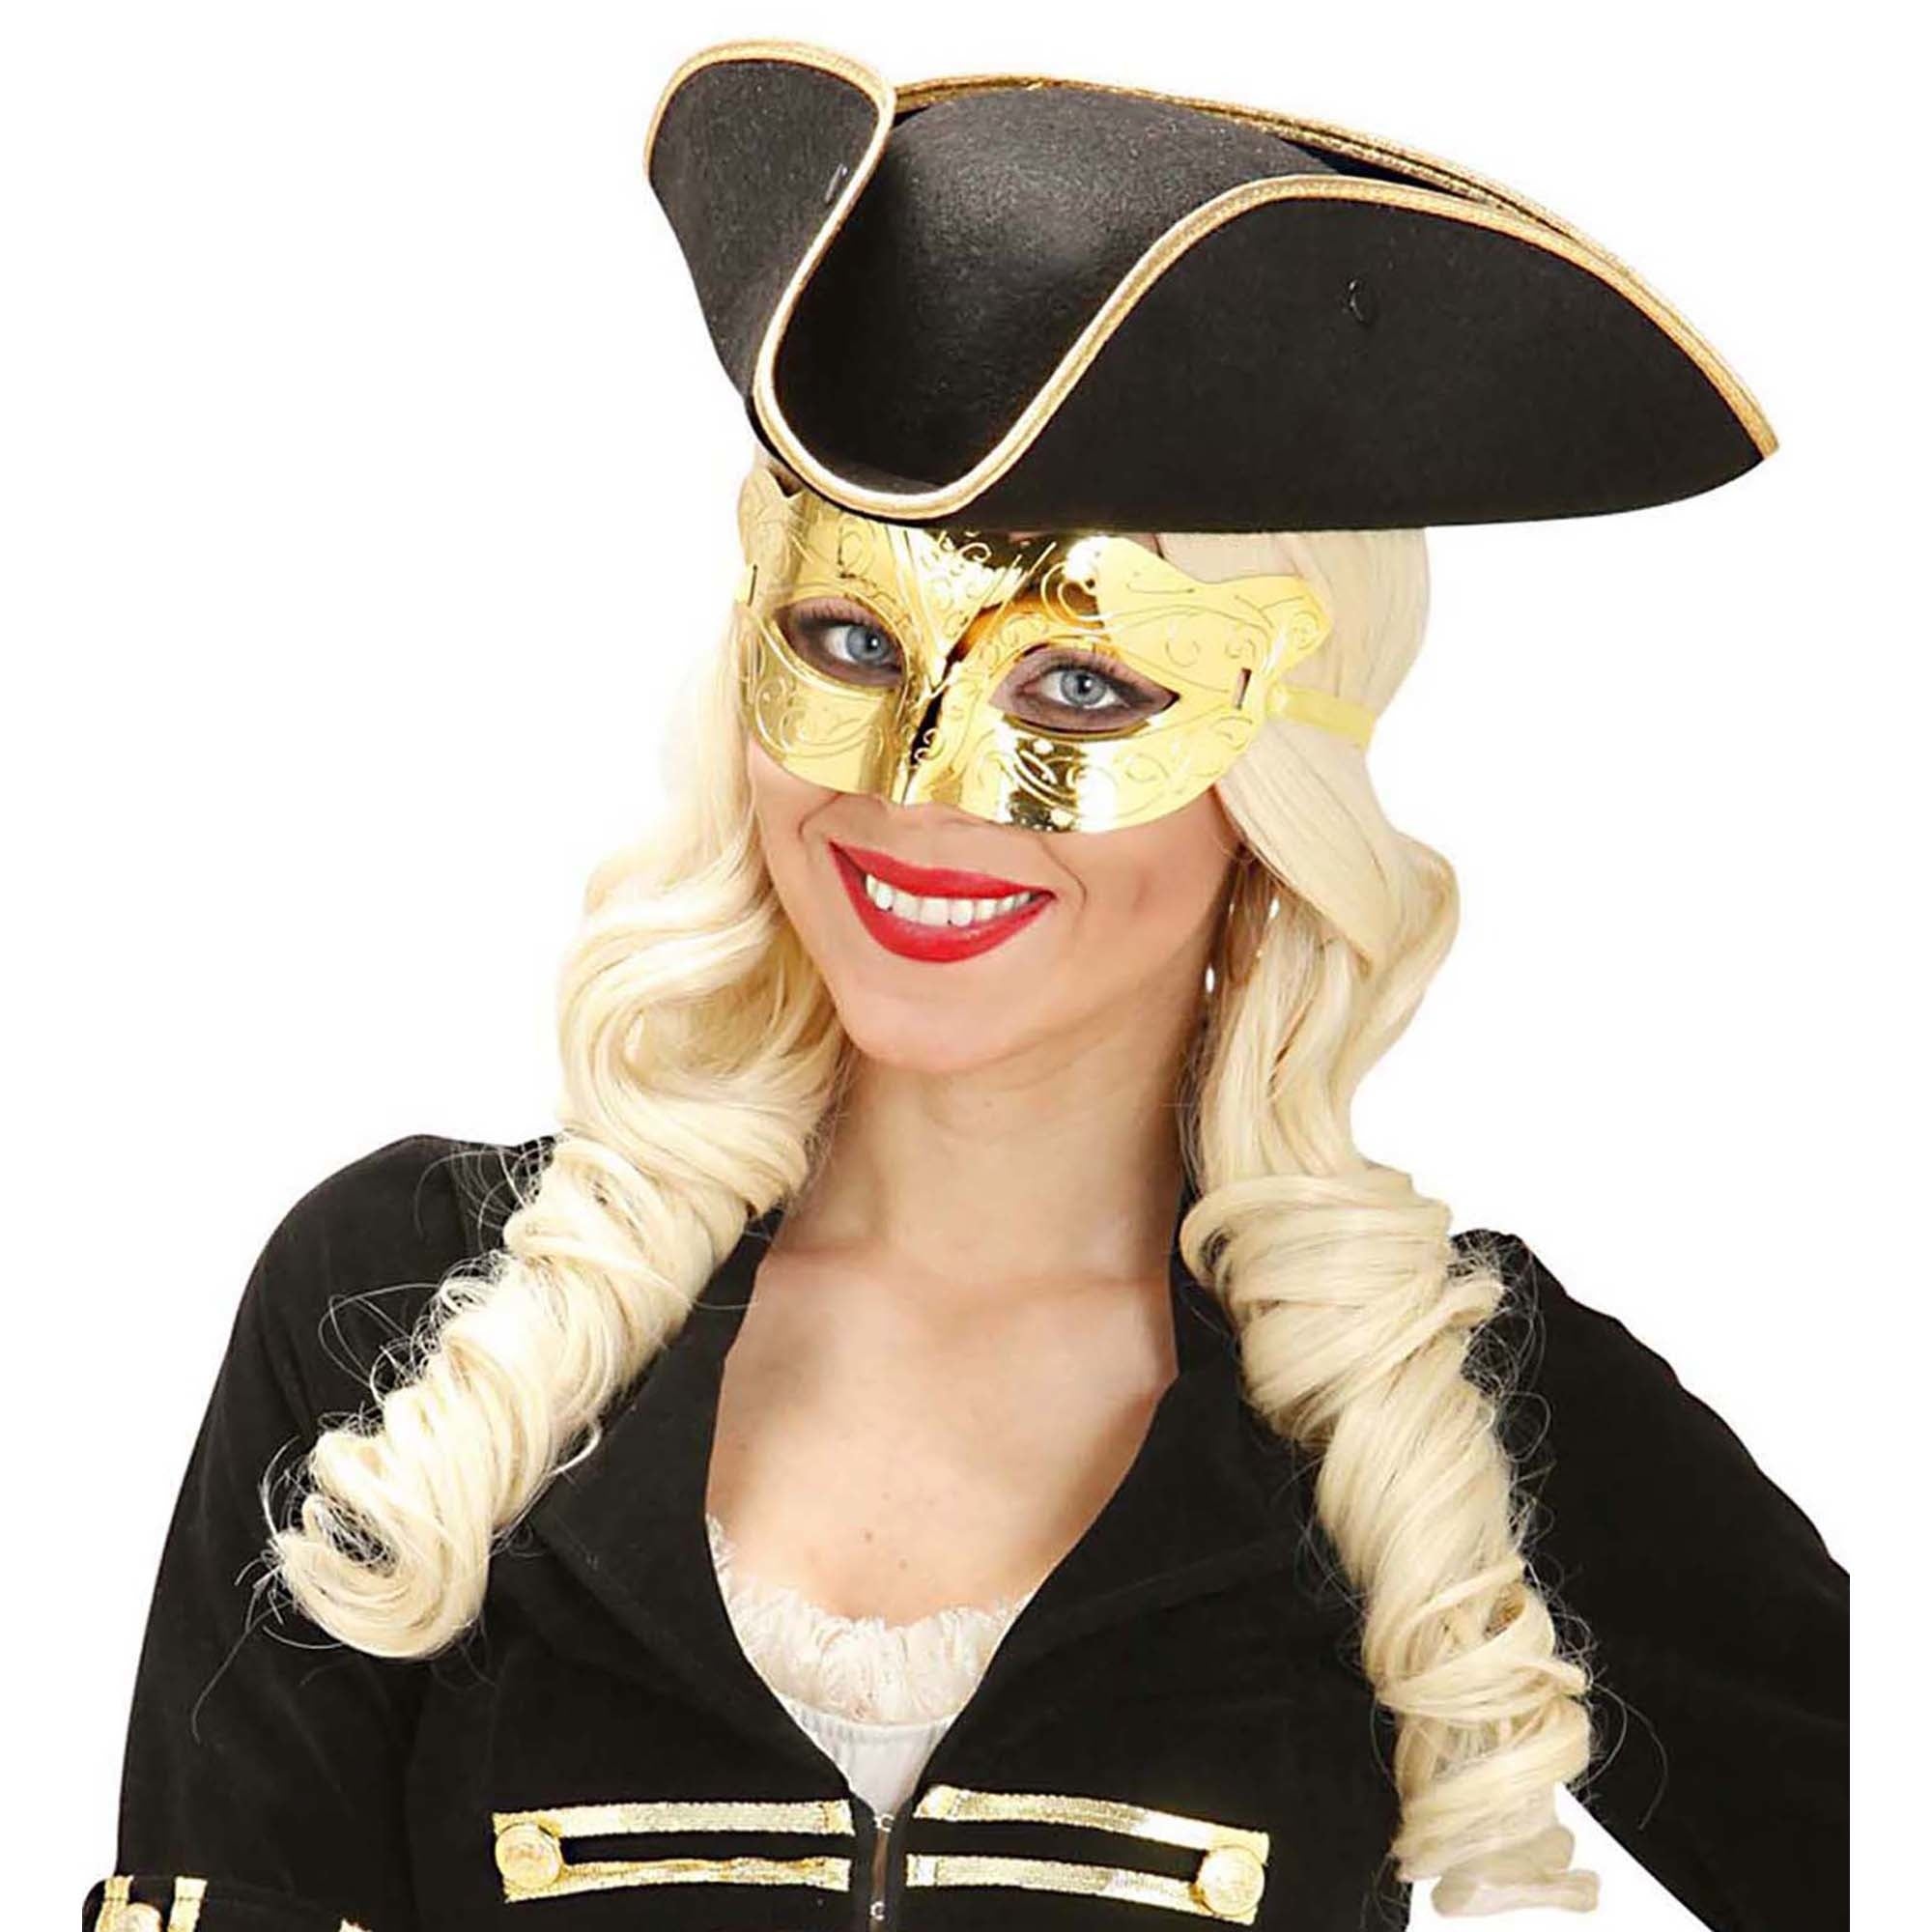 WIDMANN - Glanzend goudkleurig halfmasker voor volwassenen - Maskers > Masquerade masker